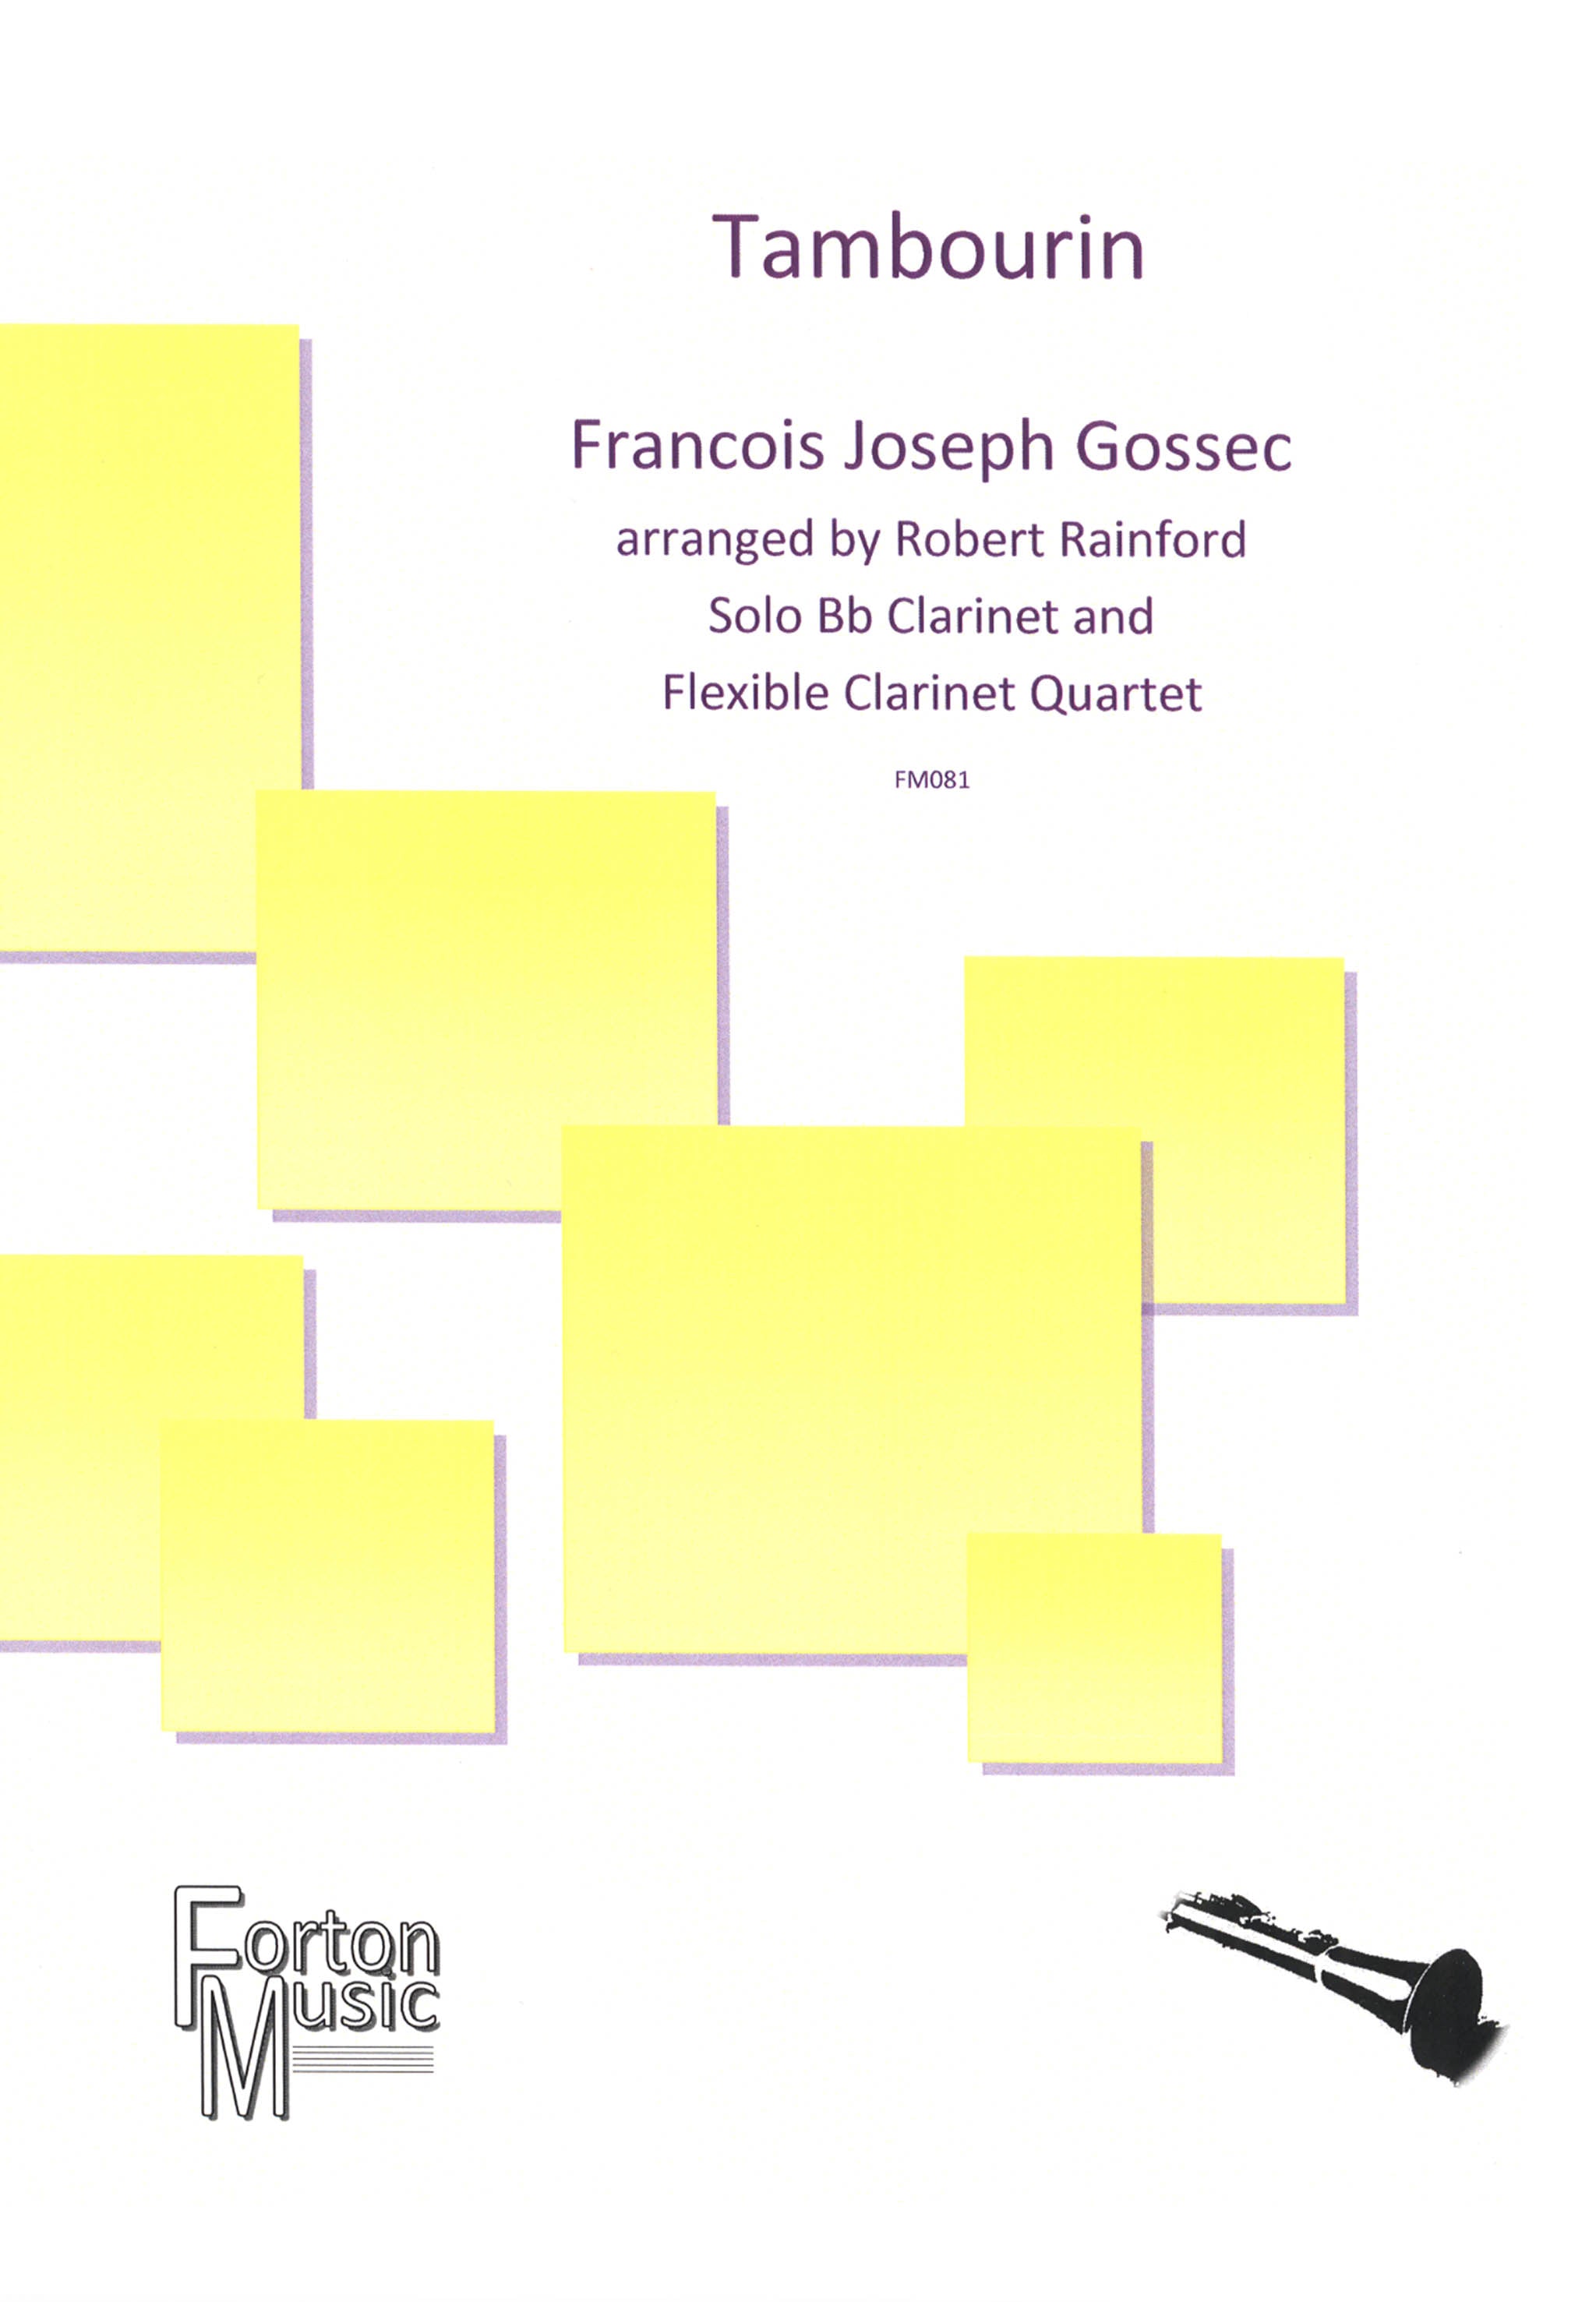 Gossec Tambourin five clarinets arrangement cover